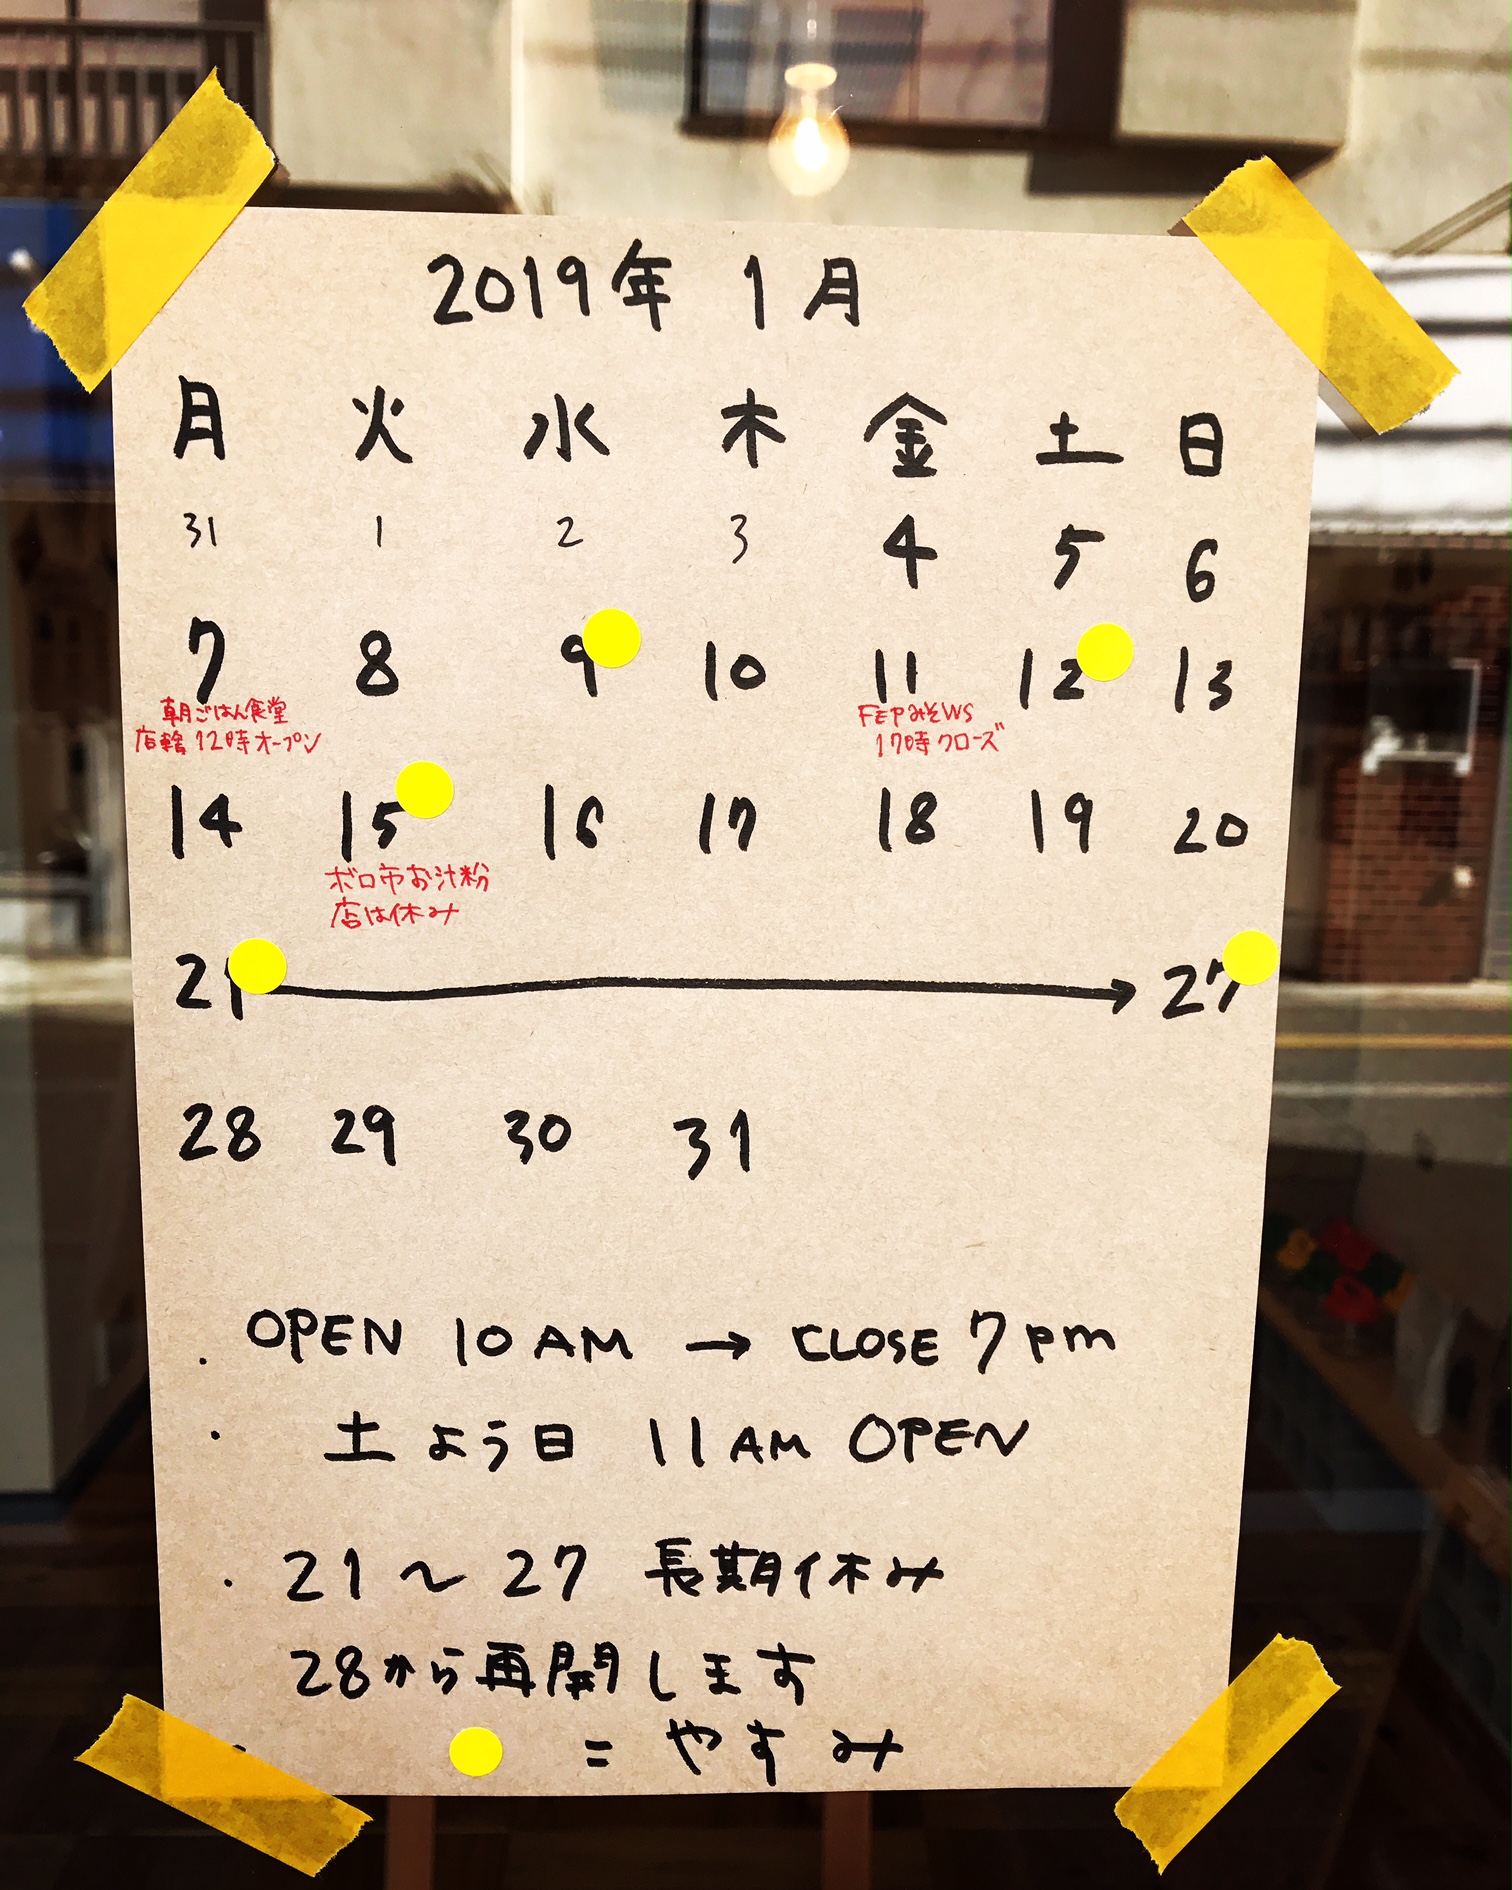 【2019年1月】松陰神社前店 営業カレンダー